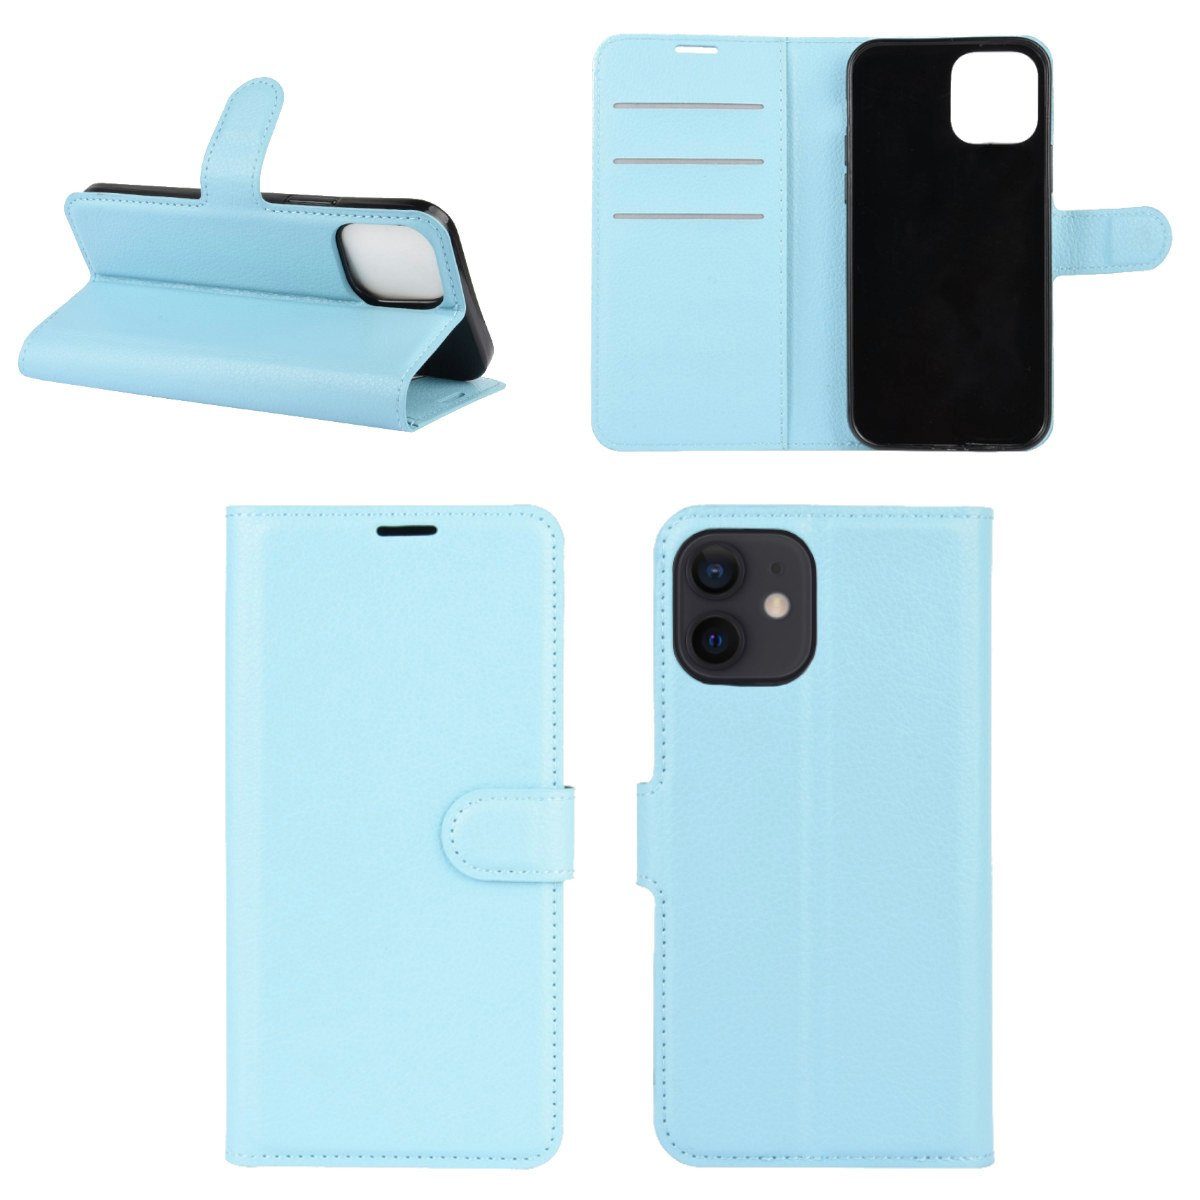 Wigento Handyhülle Für Apple iPhone 12 Mini 5.4 Zoll Handy Tasche Hülle  Etuis Cover Case Schutz Zubehör